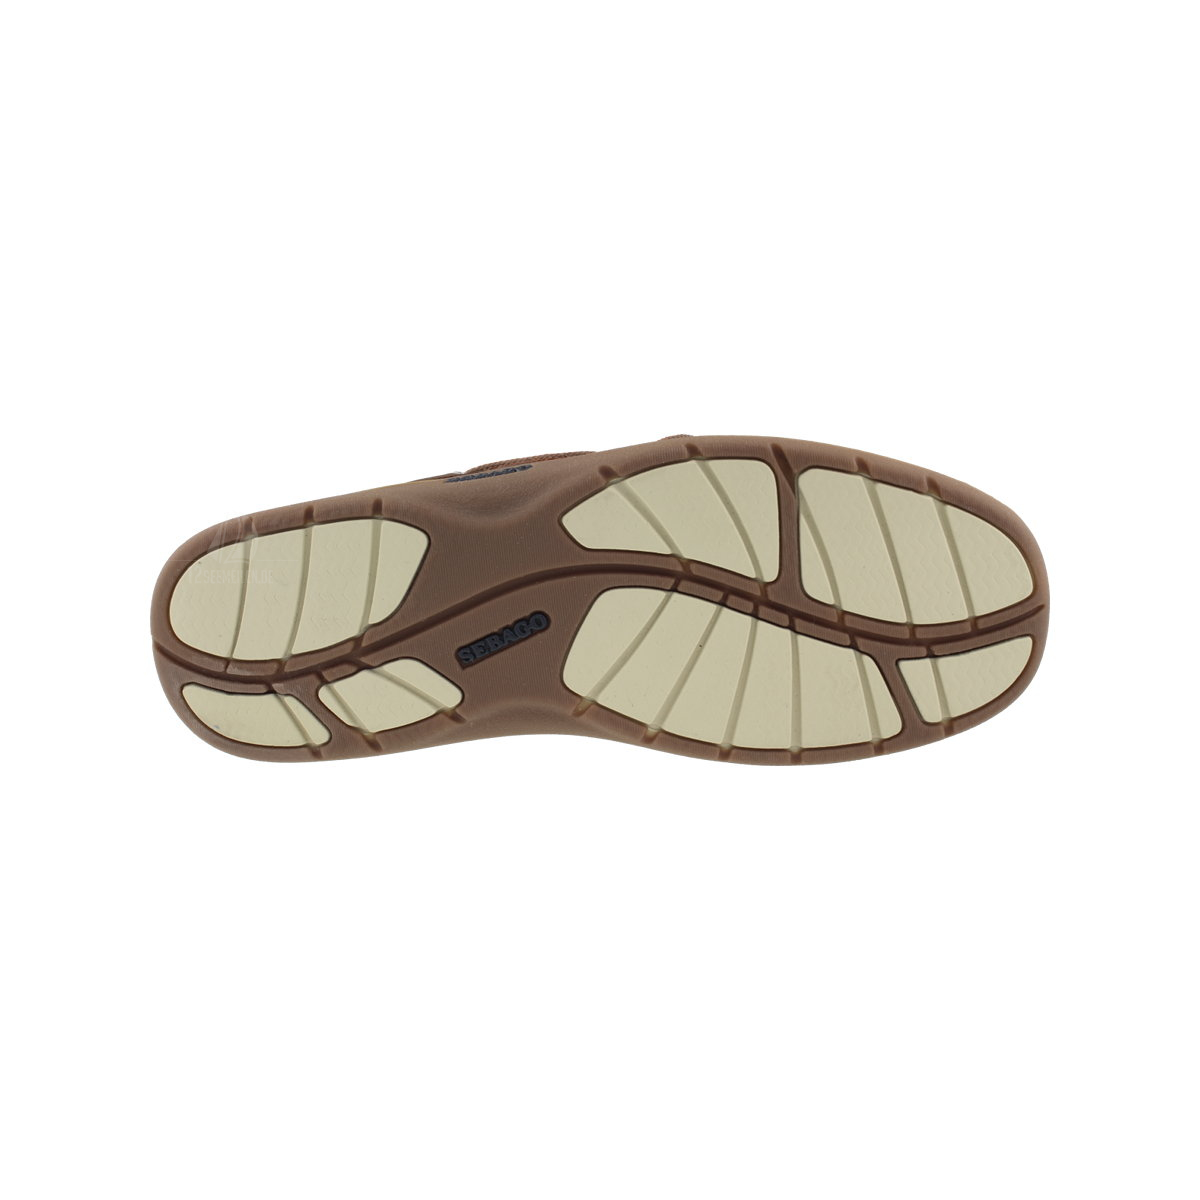 Sebago Clovehitch II bootschoen heren walnut leather eu 44.5 (us 10.5)